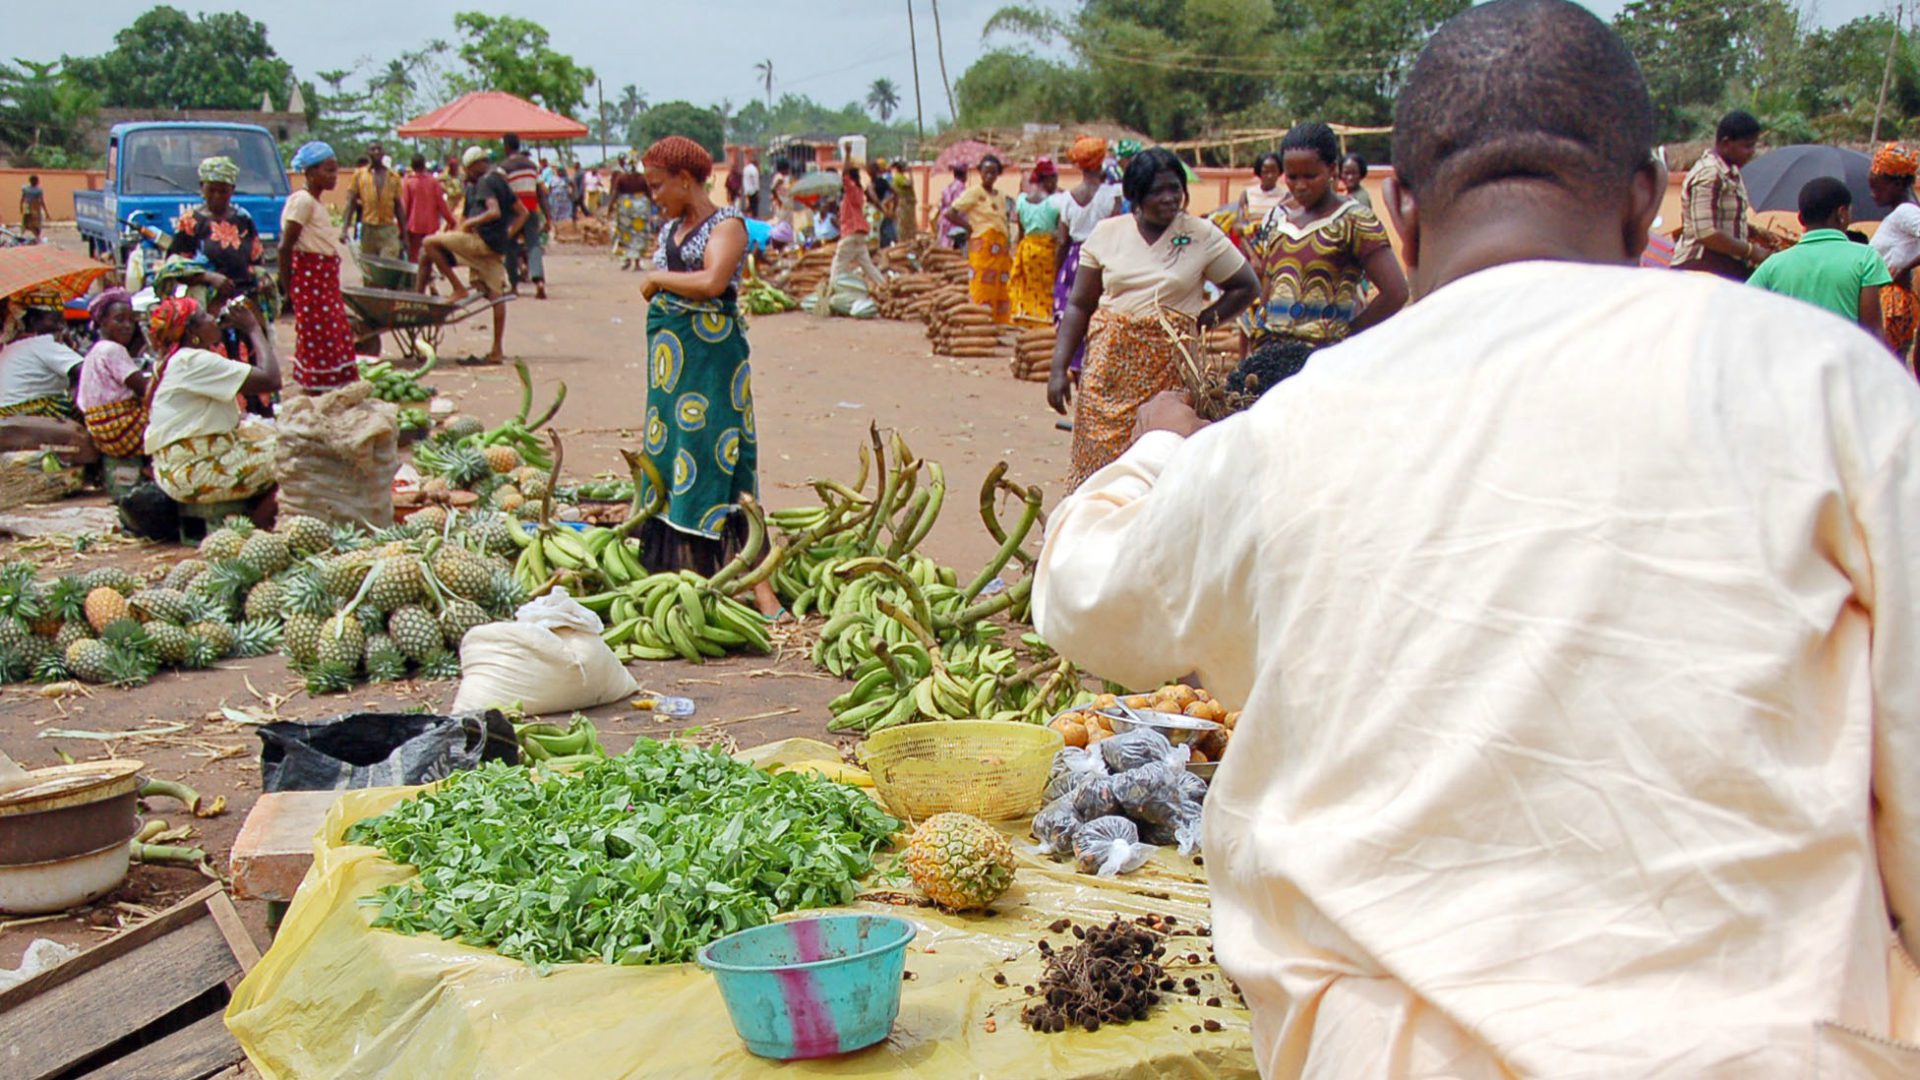 La cohésion sociale est mise à mal au nord du Nigeria (Photo d'illustration: Robert/Flickr/CC BY 2.0)